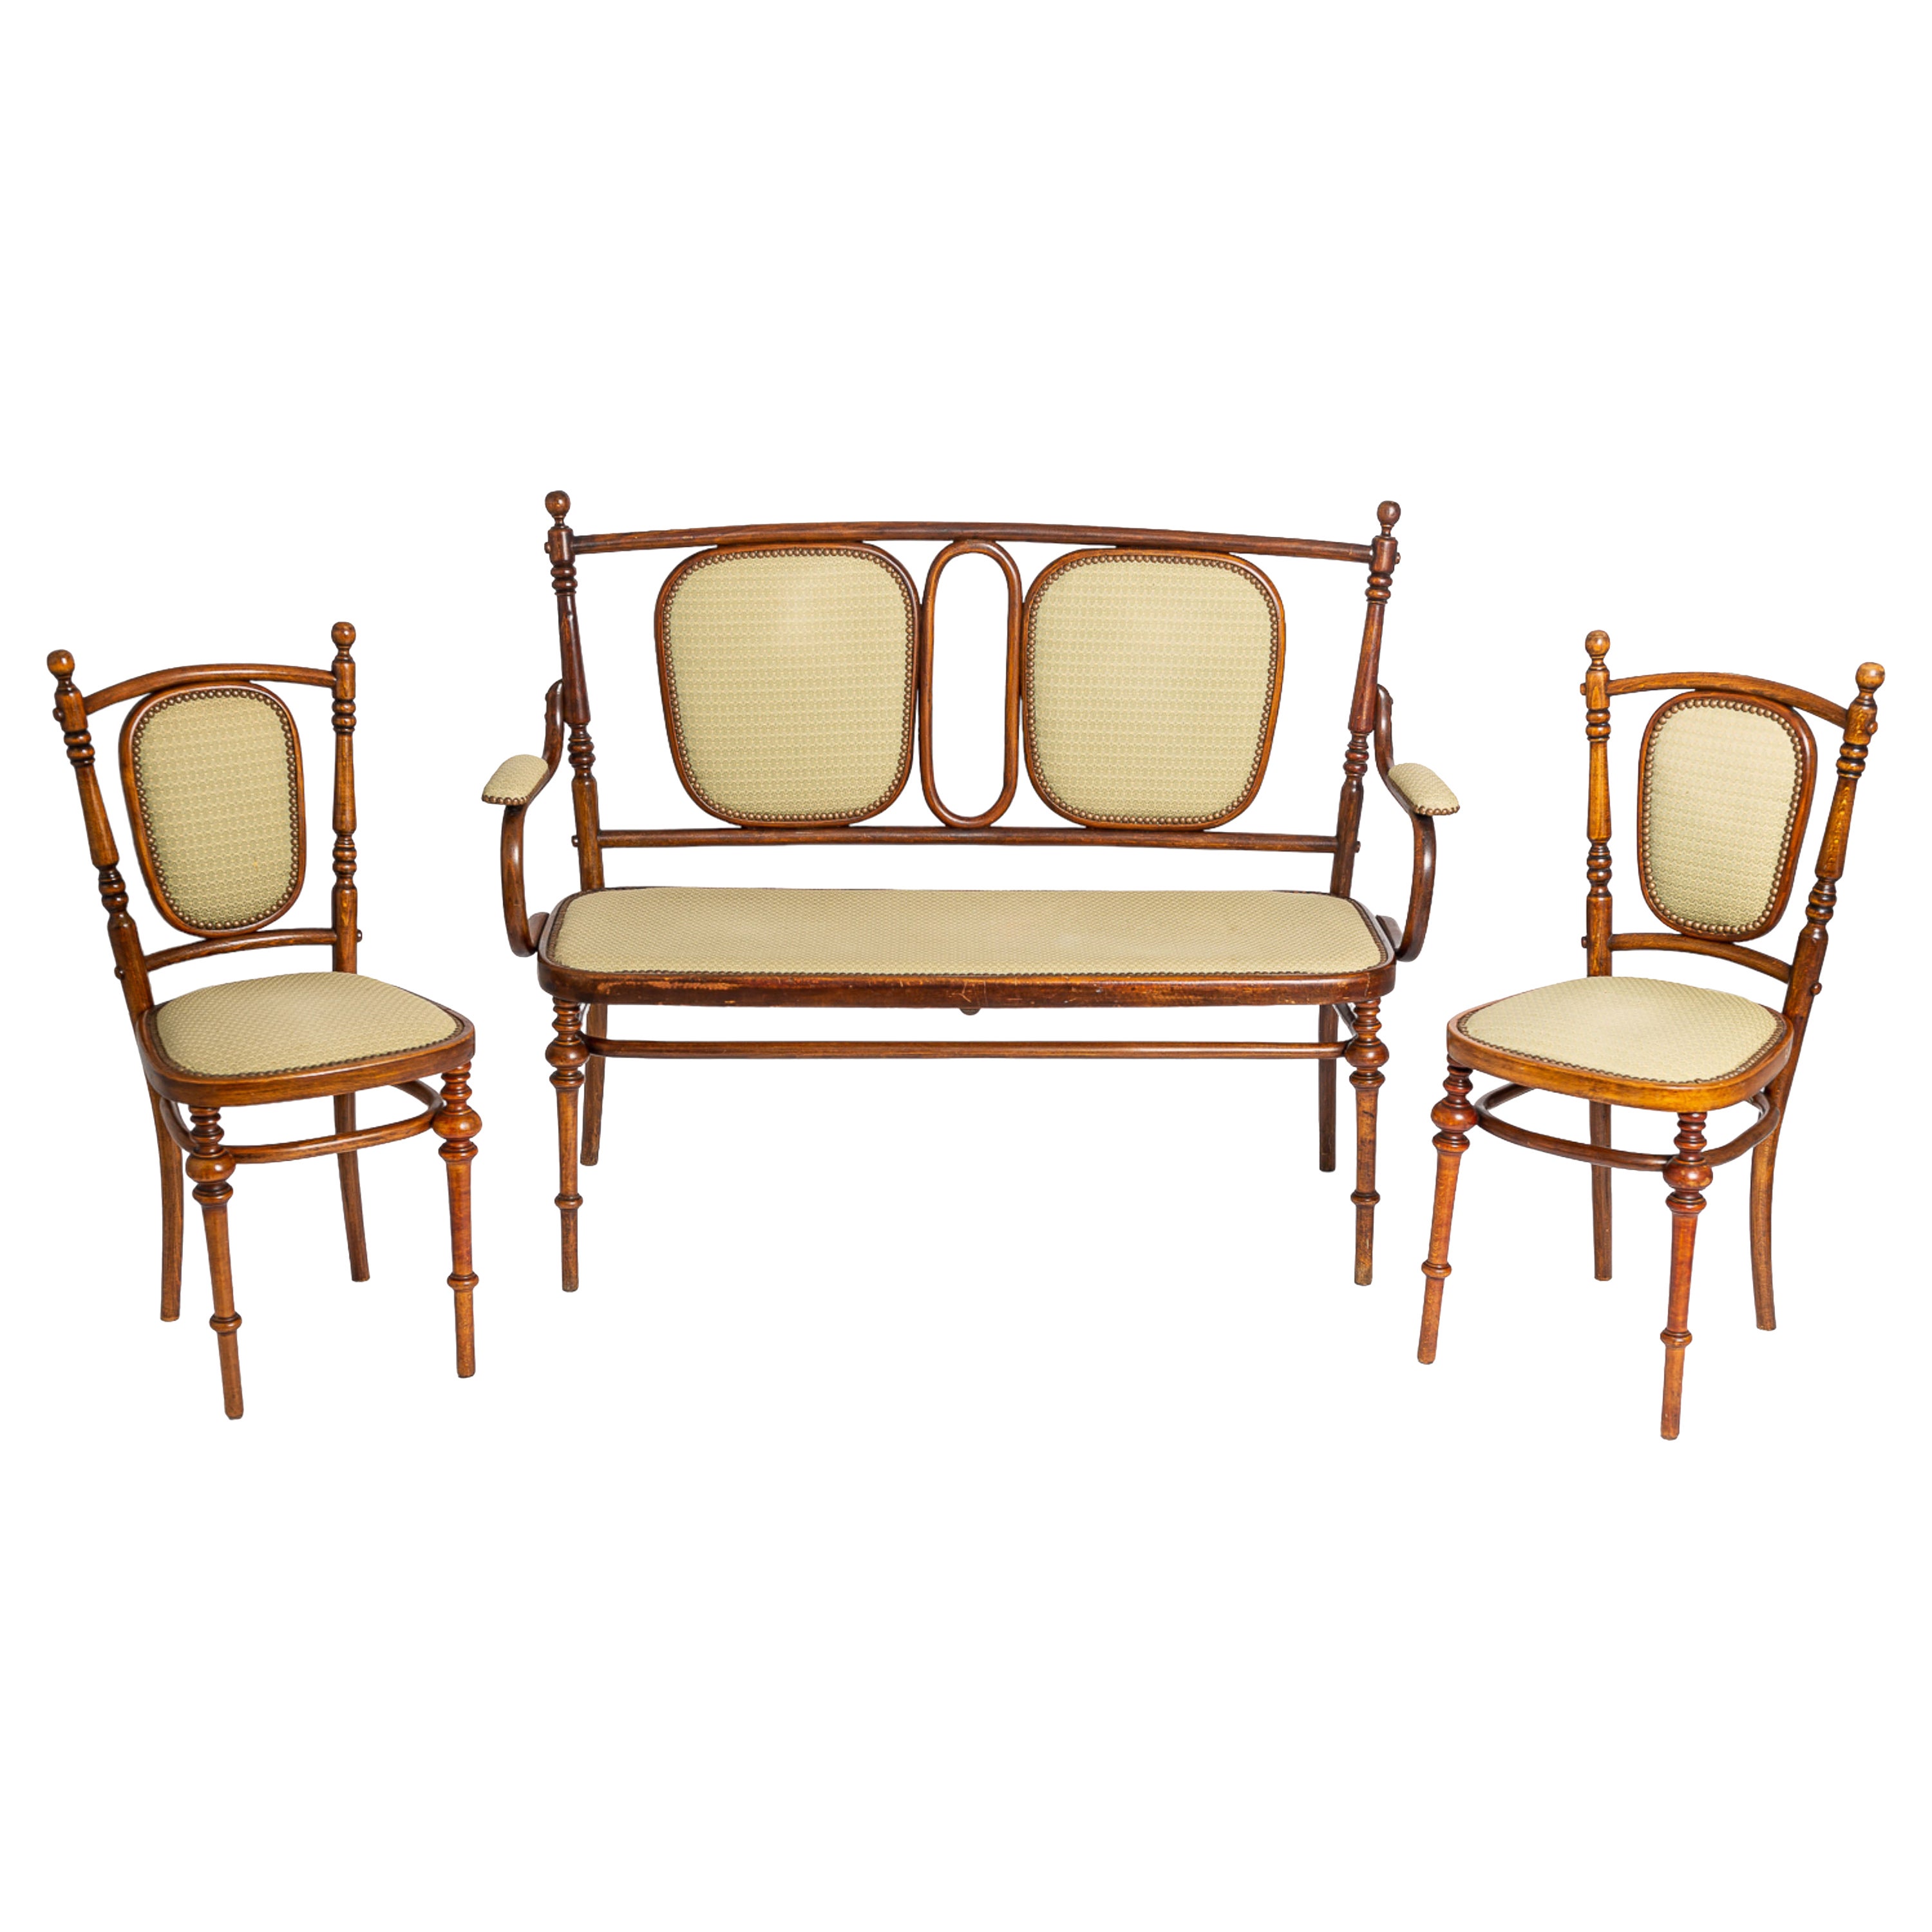 Antique Art Nouveau Loveseat Bench and Side Chairs Salon Suite